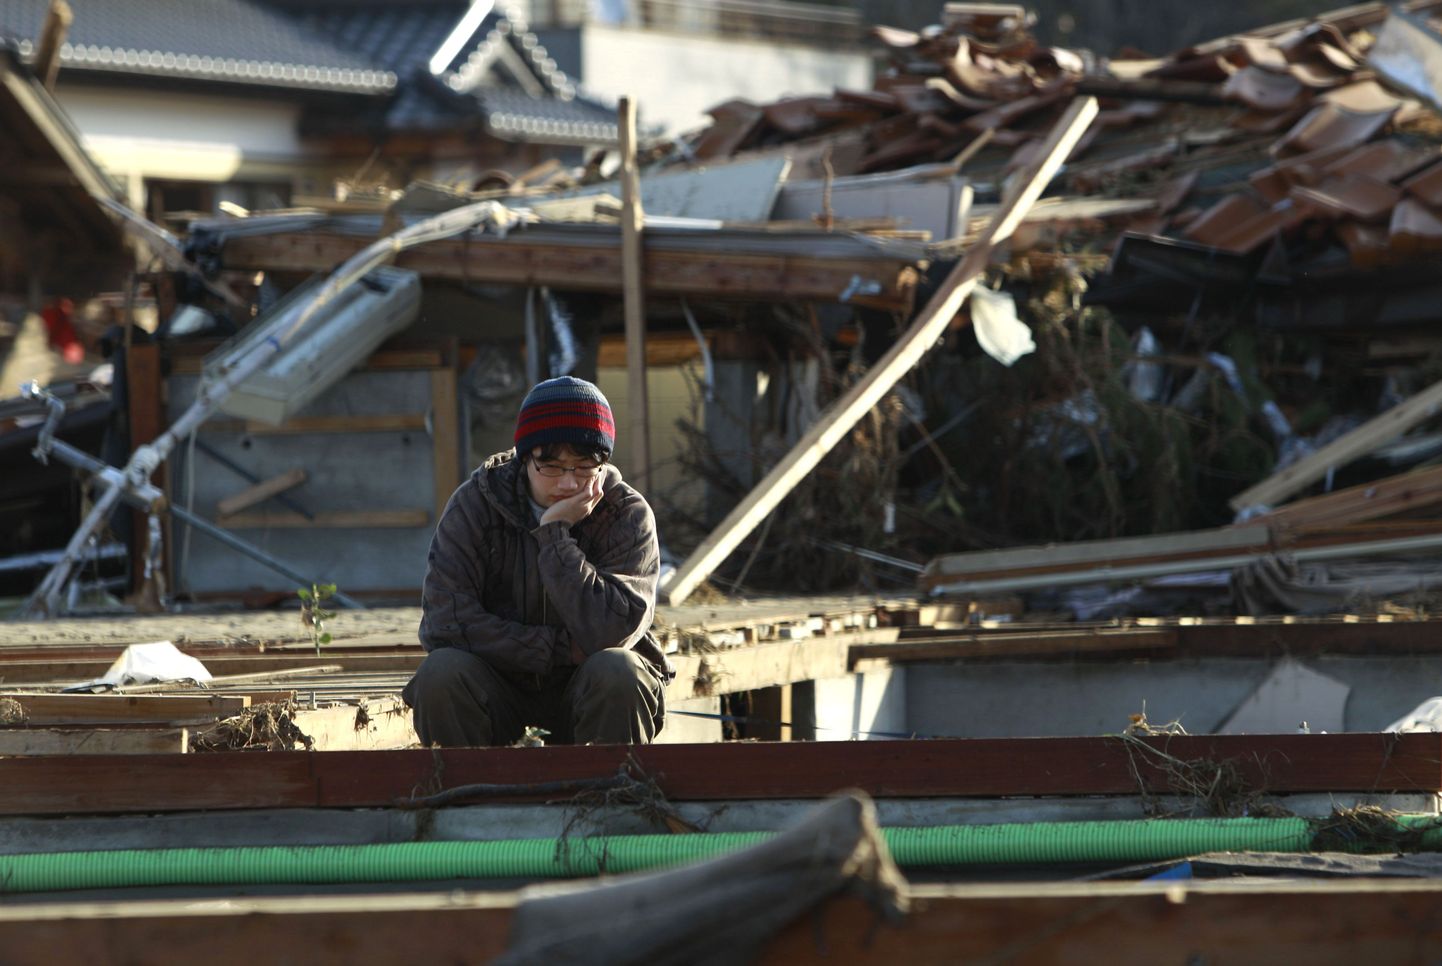 30-aastane Atsushi Shishido istub Soma linnas Fukushima prefektuuris paigas, kus tsunami tema kodu purustas ja naabrid tappis. Tal endal õnnestus päästa oma 87-aastane vanaema.